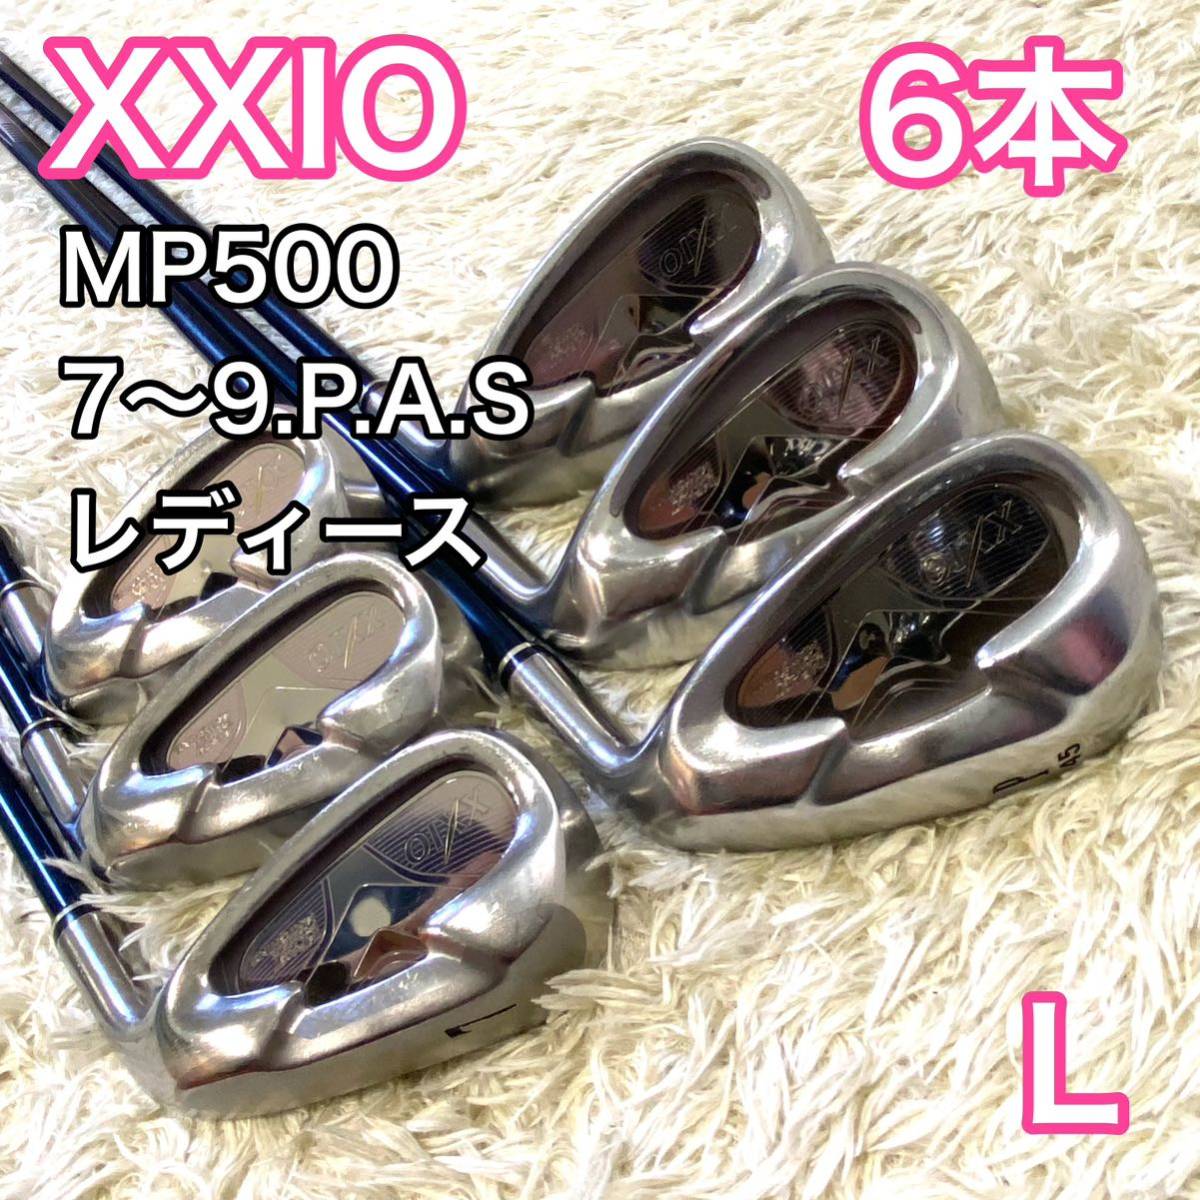 【あす楽対応】 ゼクシオ5 XXIO MP500 アイアン 6本 右 ゴルフクラブ レディース アイアン